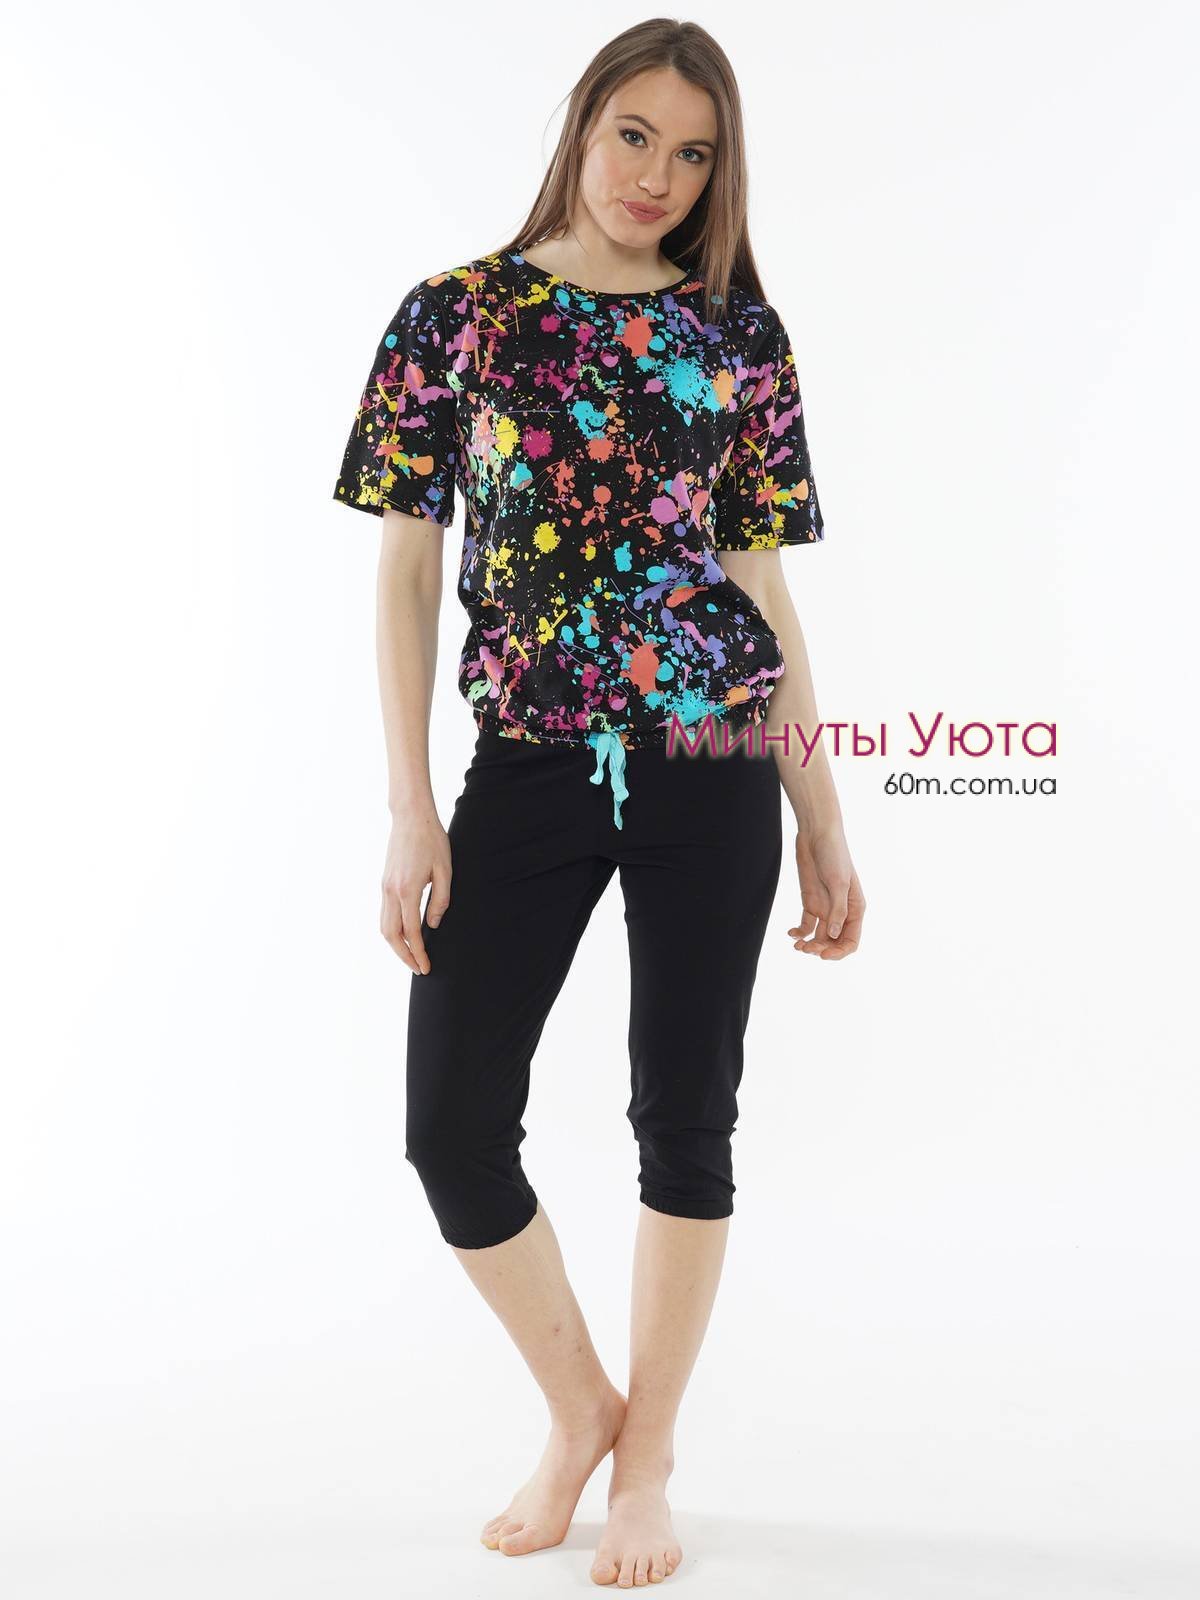 Женская хлопковая пижама с футболкой в яркий принт и черными капрями Vienetta Secret